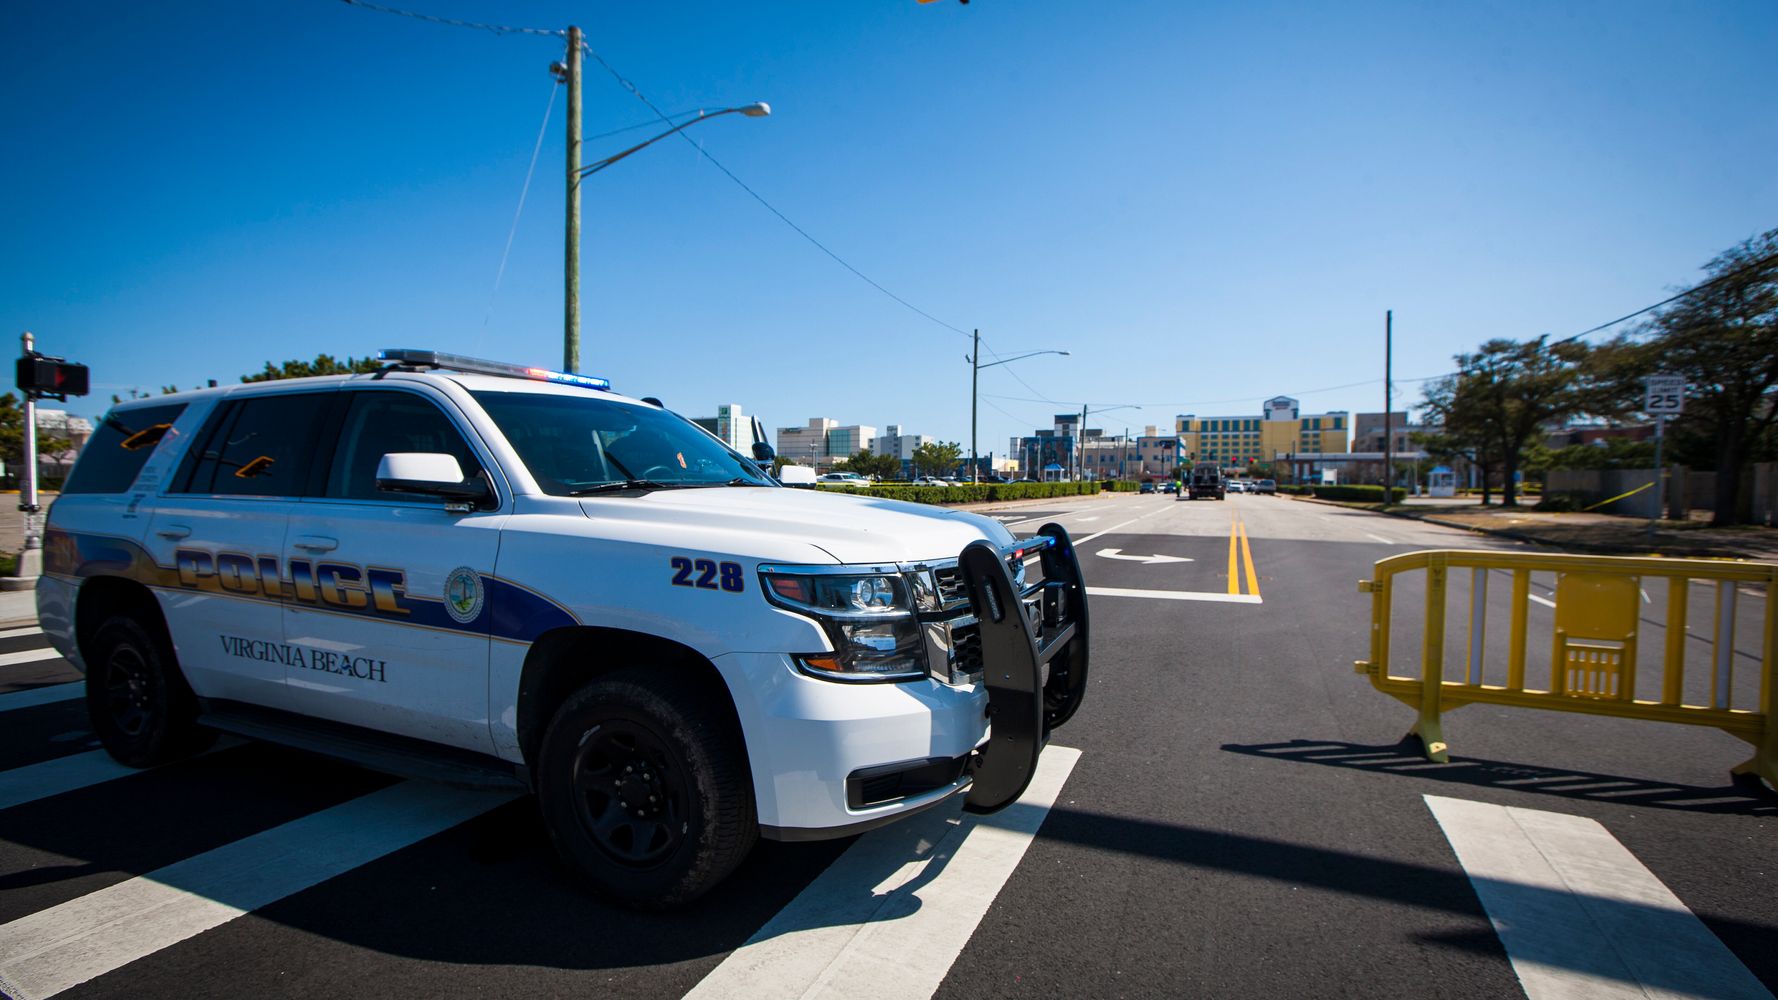 Policías de Virginia Beach usaron informes de ADN falsos durante los interrogatorios: funcionario
